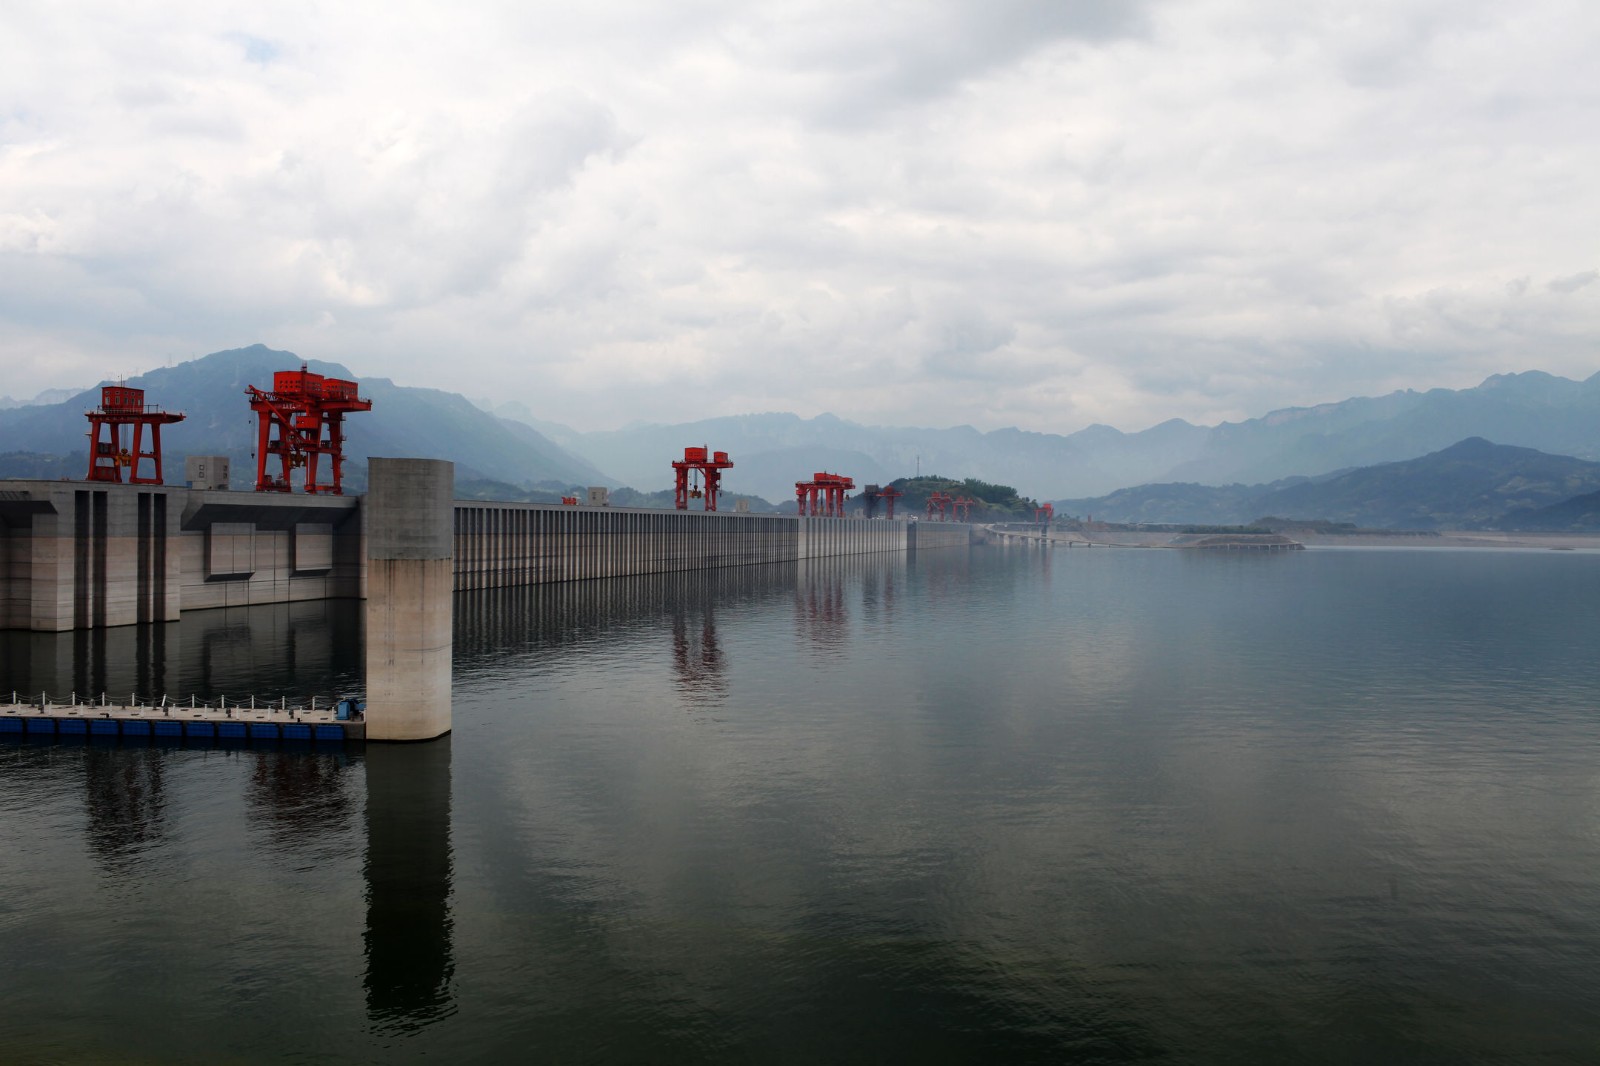 长江三峡大坝图片全景大全 最美三峡风景图片高清欣赏